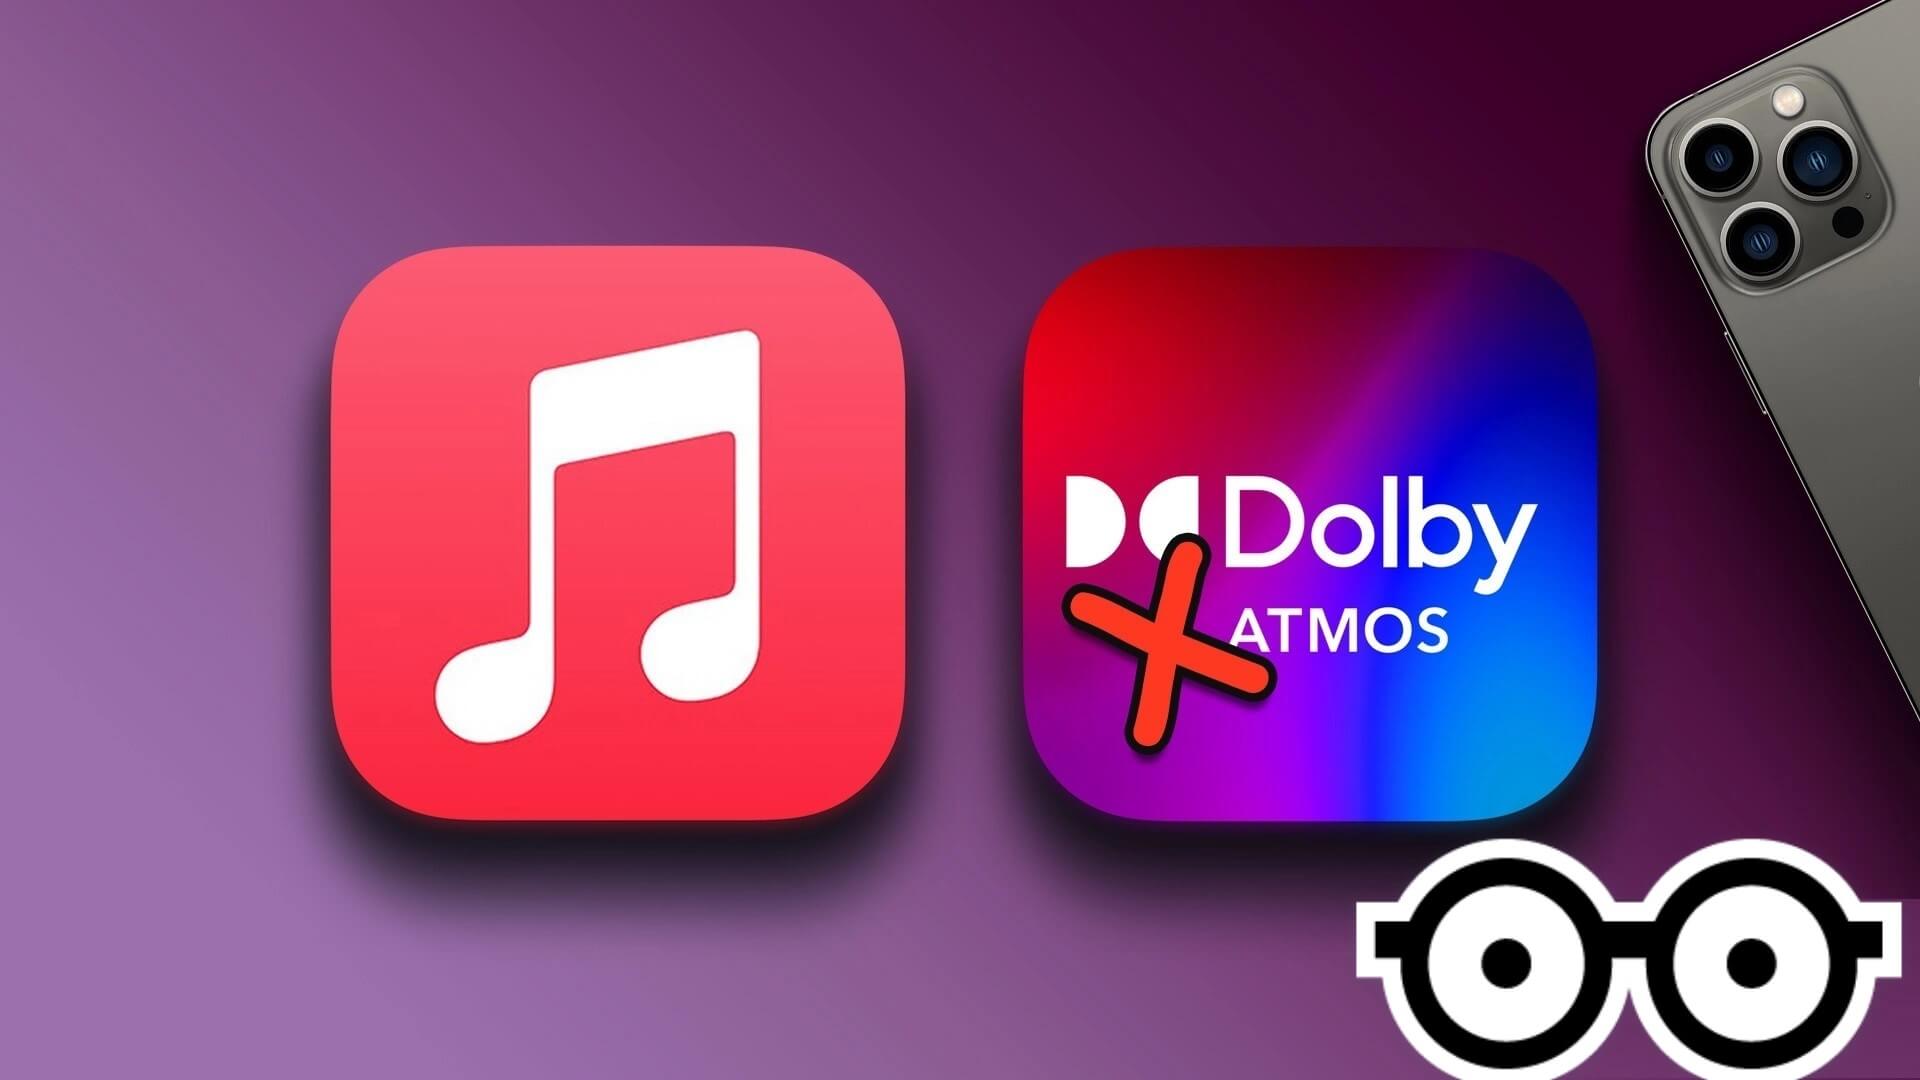 أفضل 6 إصلاحات لعدم عمل Dolby Atmos في Apple Music على iPhone - %categories